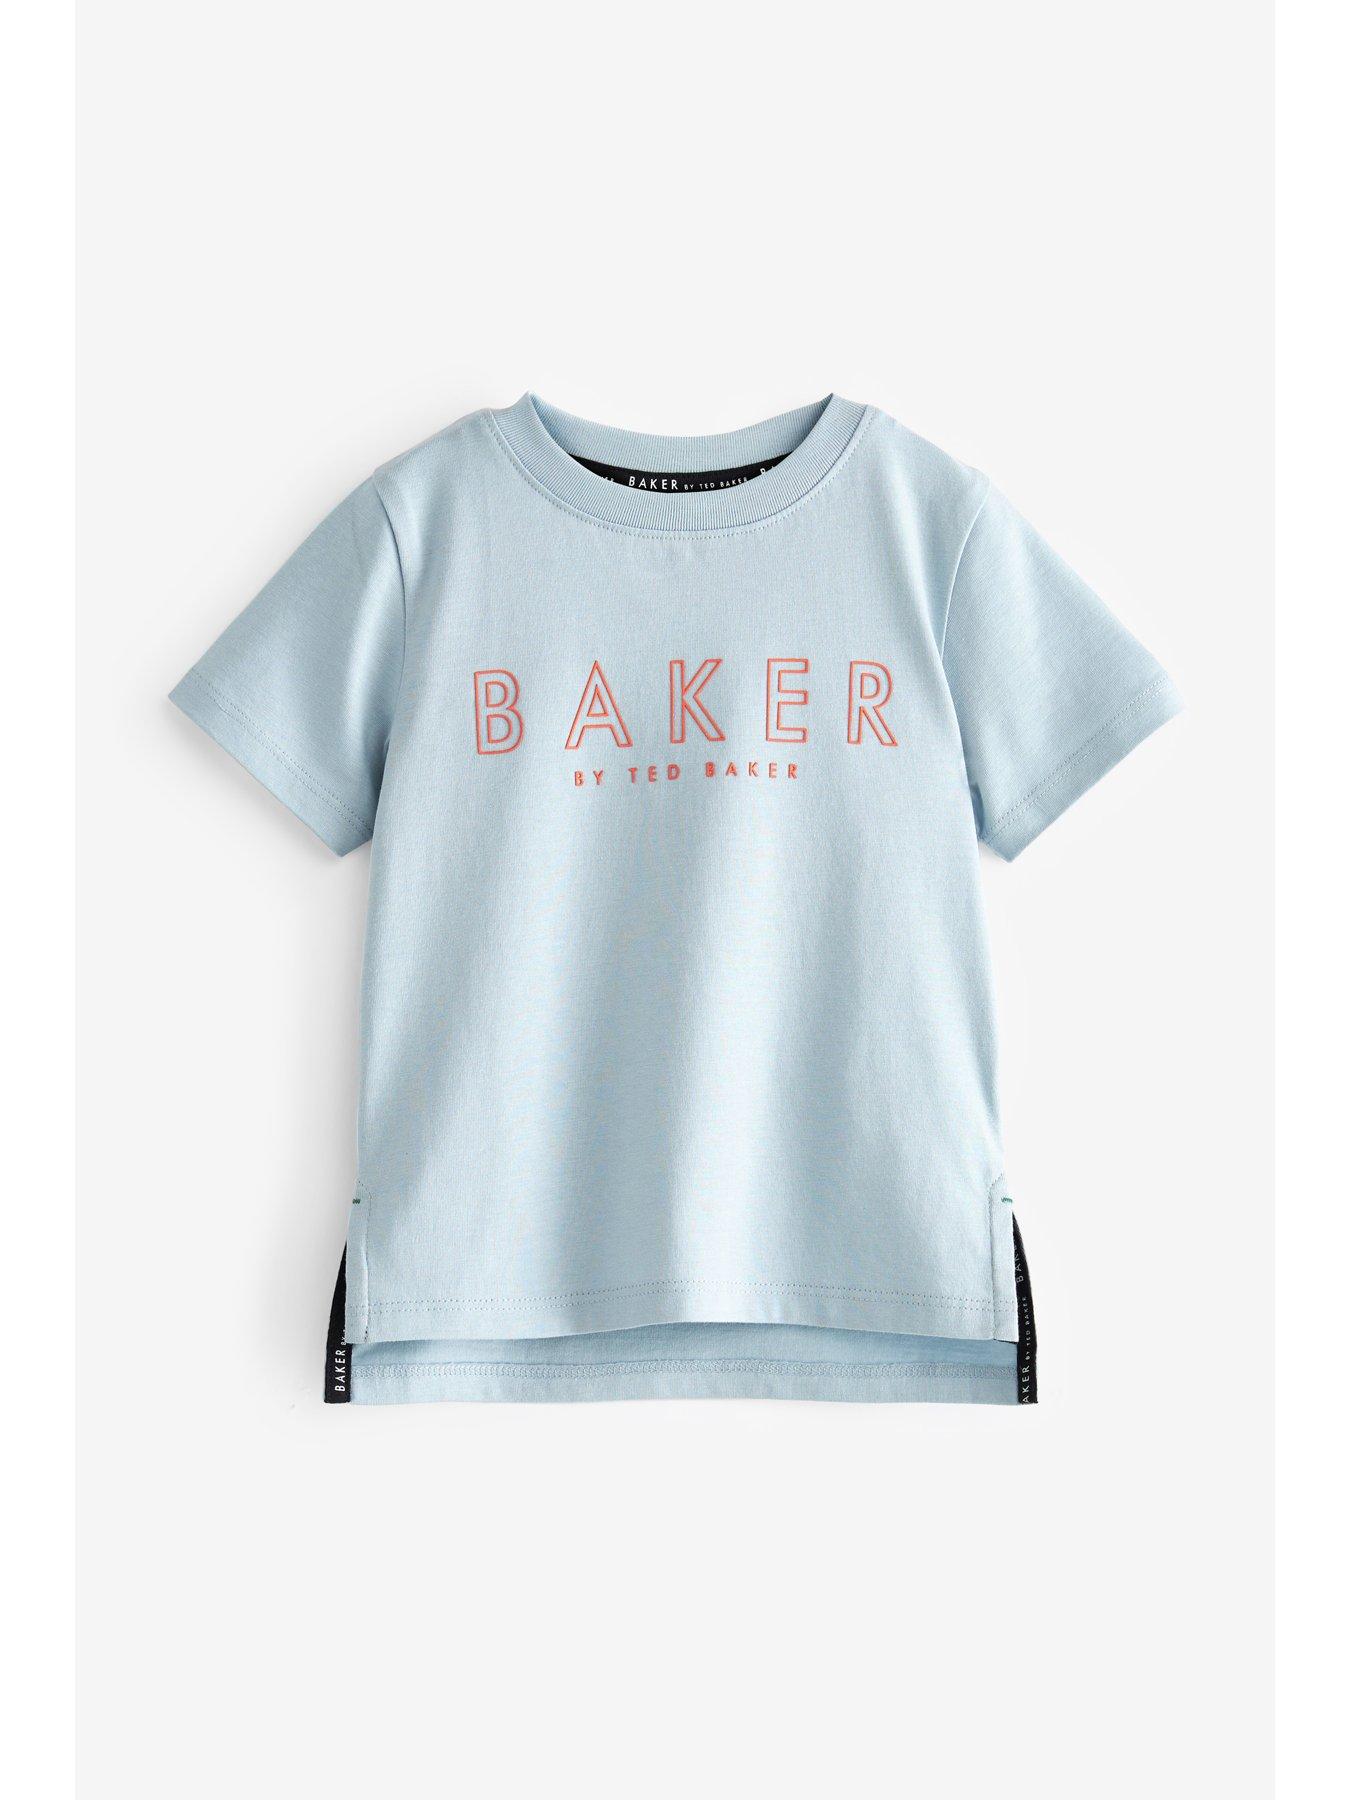 Ted Baker Baker By Ted Baker Toddler Boys Dino Blue Tee | very.co.uk